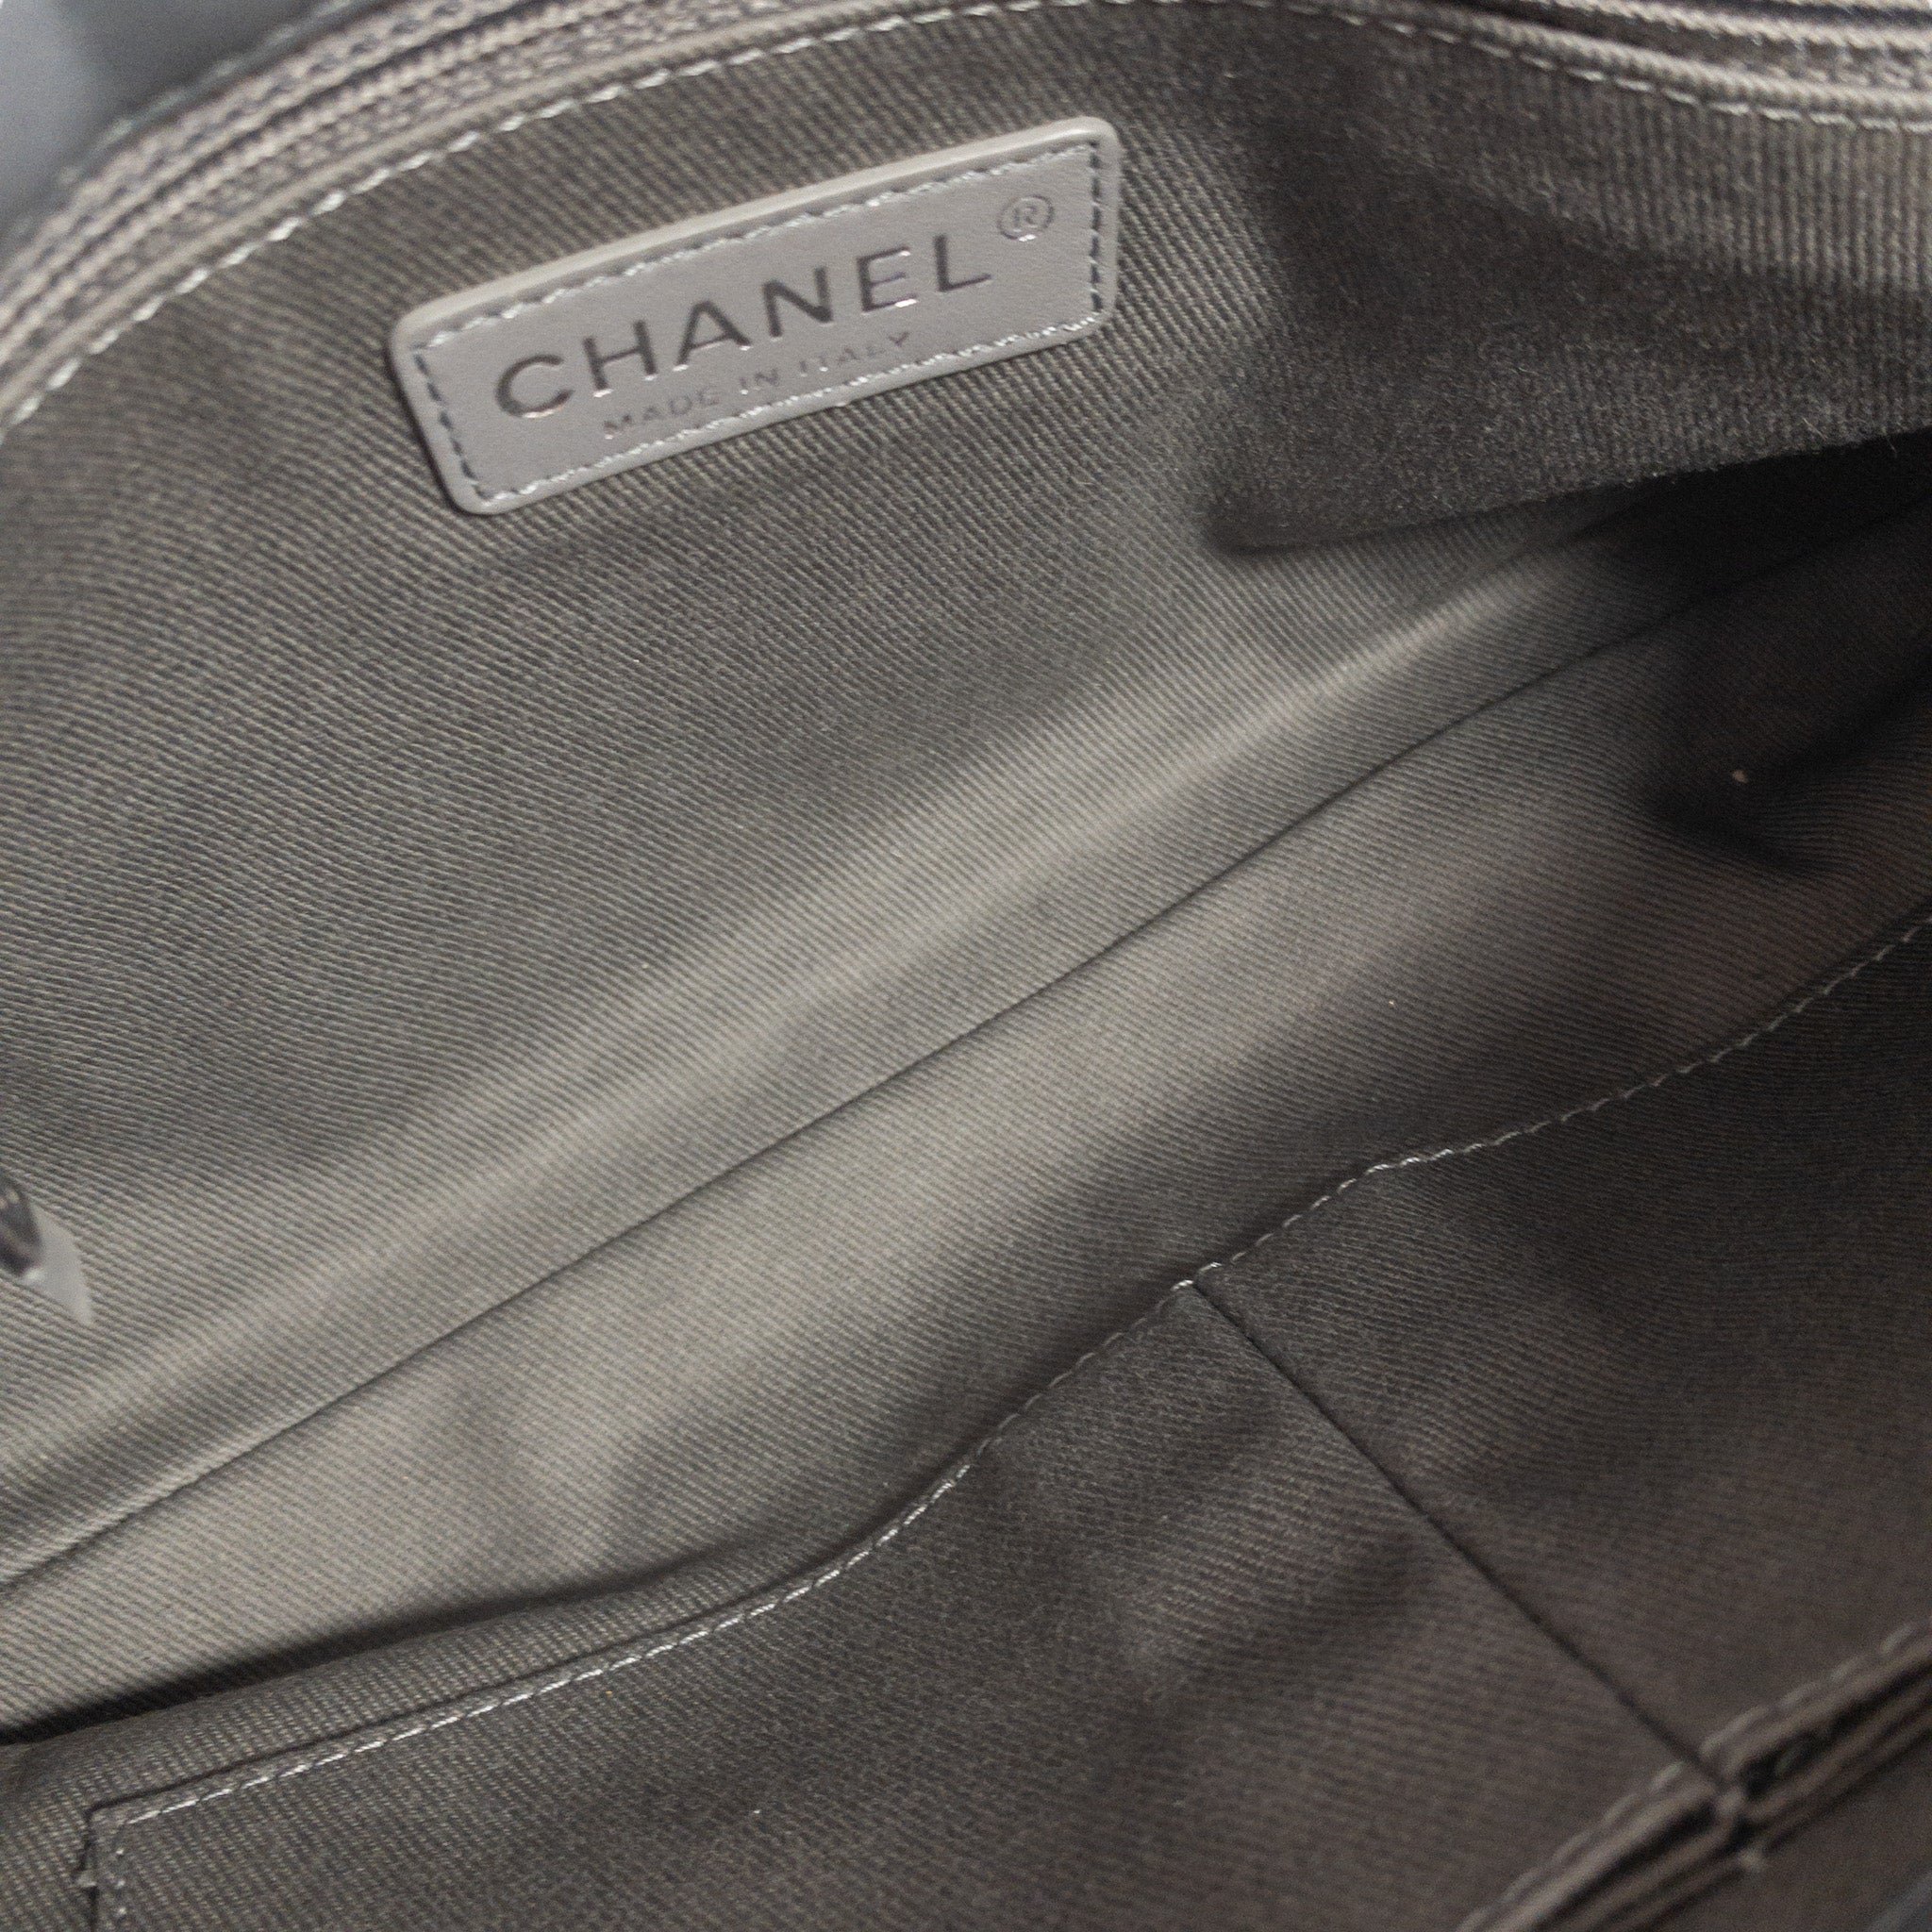 Chanel Oh My Boy Graffiti Flap Bag